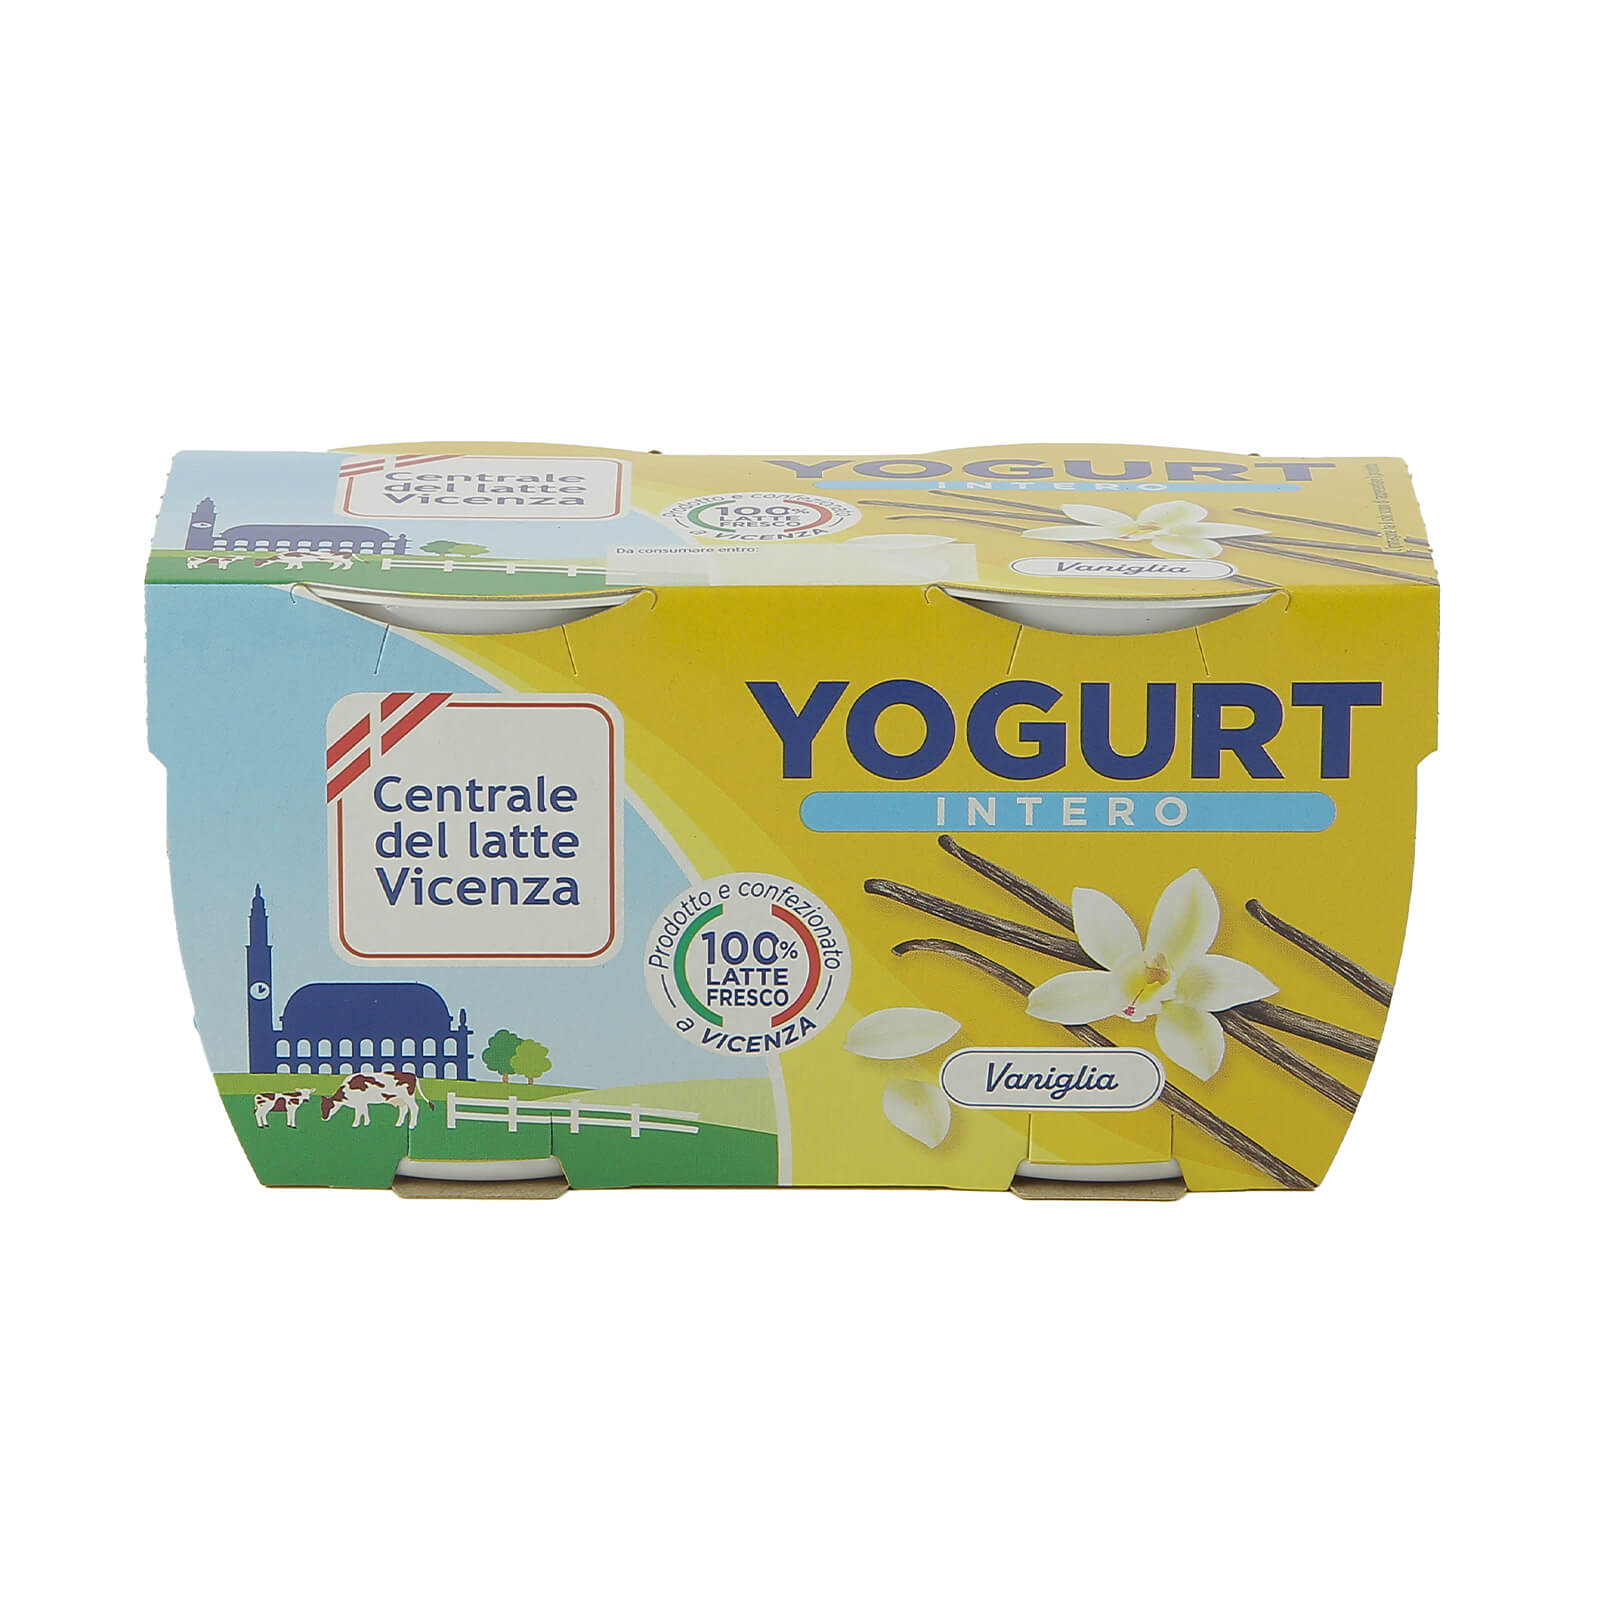 Yogurt Intero Vicenza - Vaniglia - Centrale del Latte di Vicenza